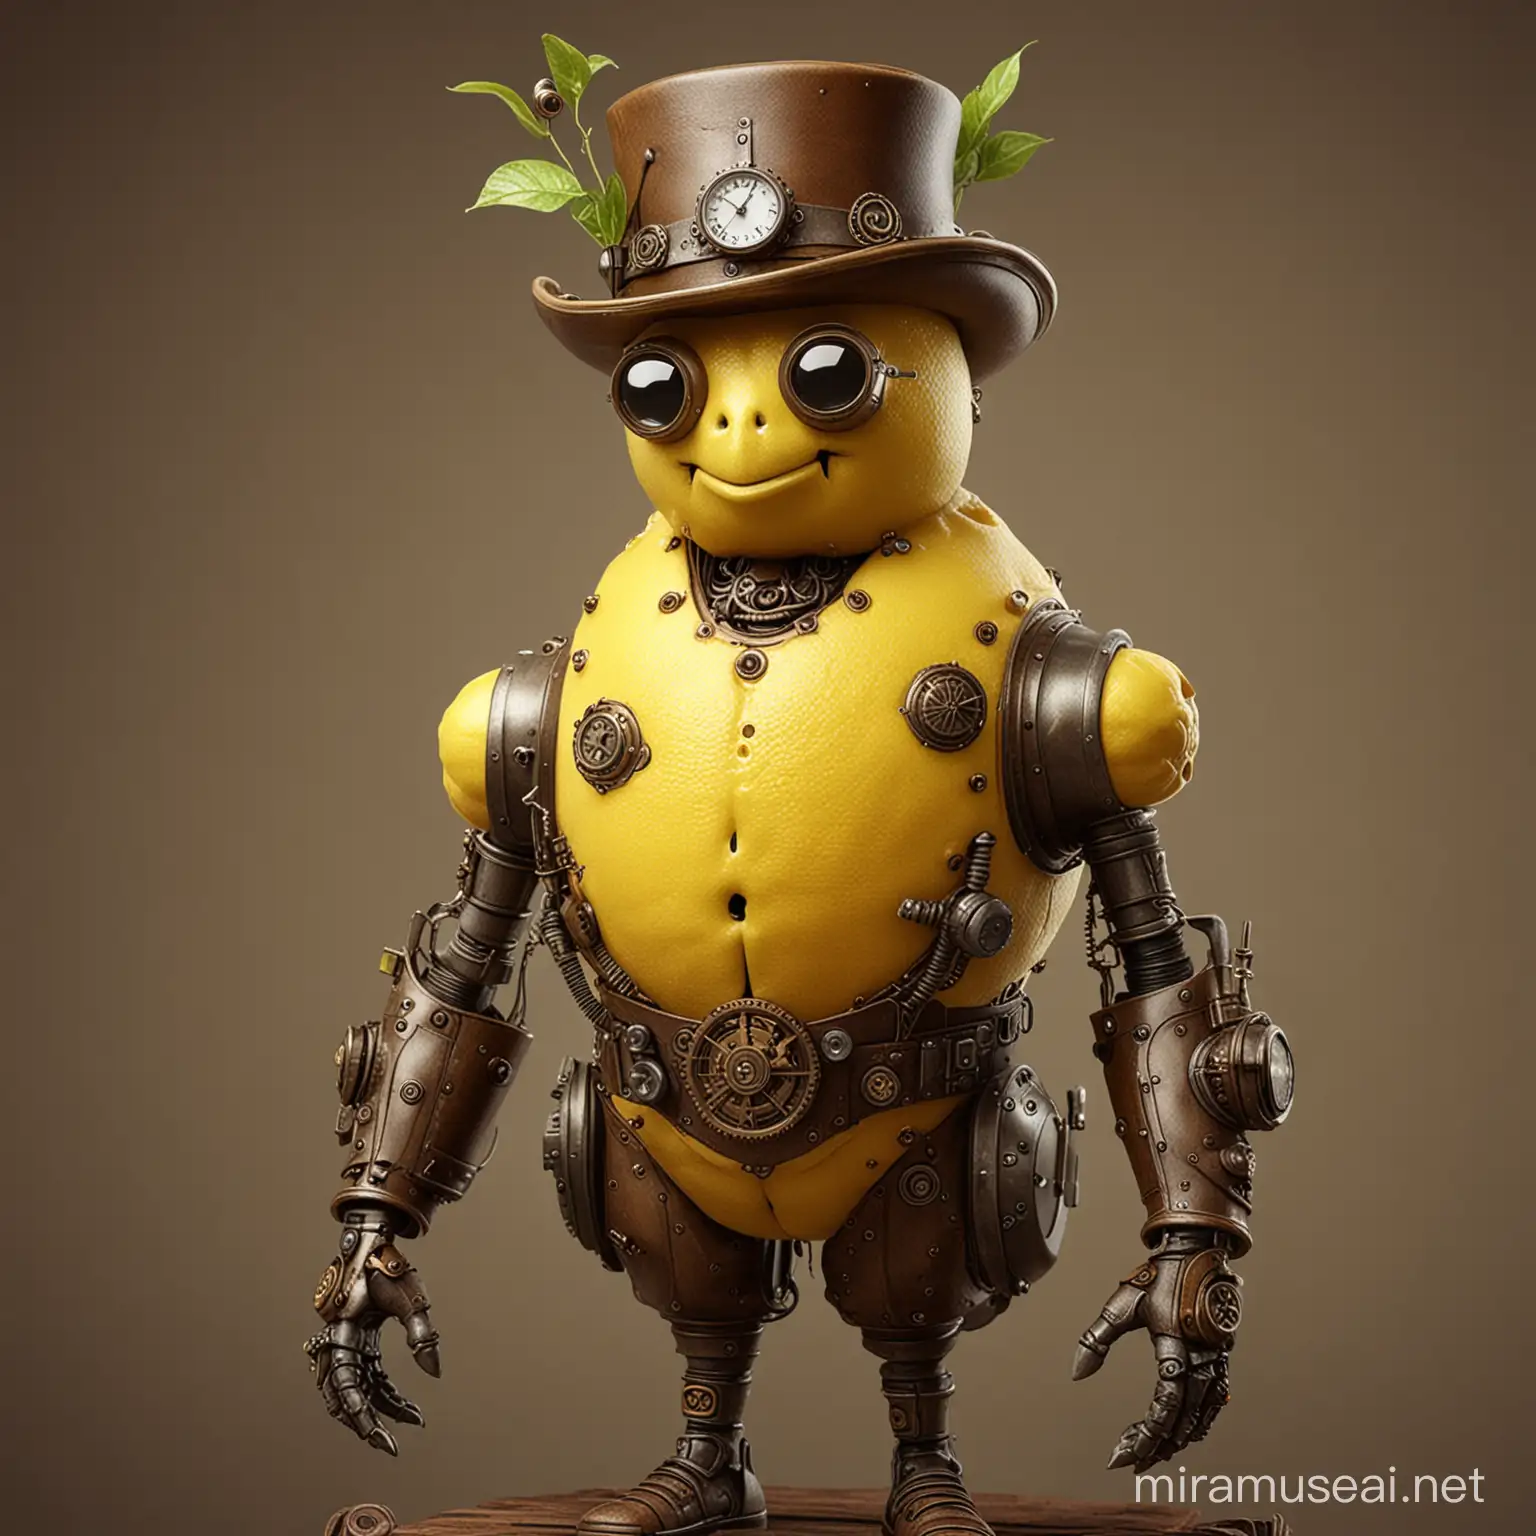 A cool steampunk lemon guy